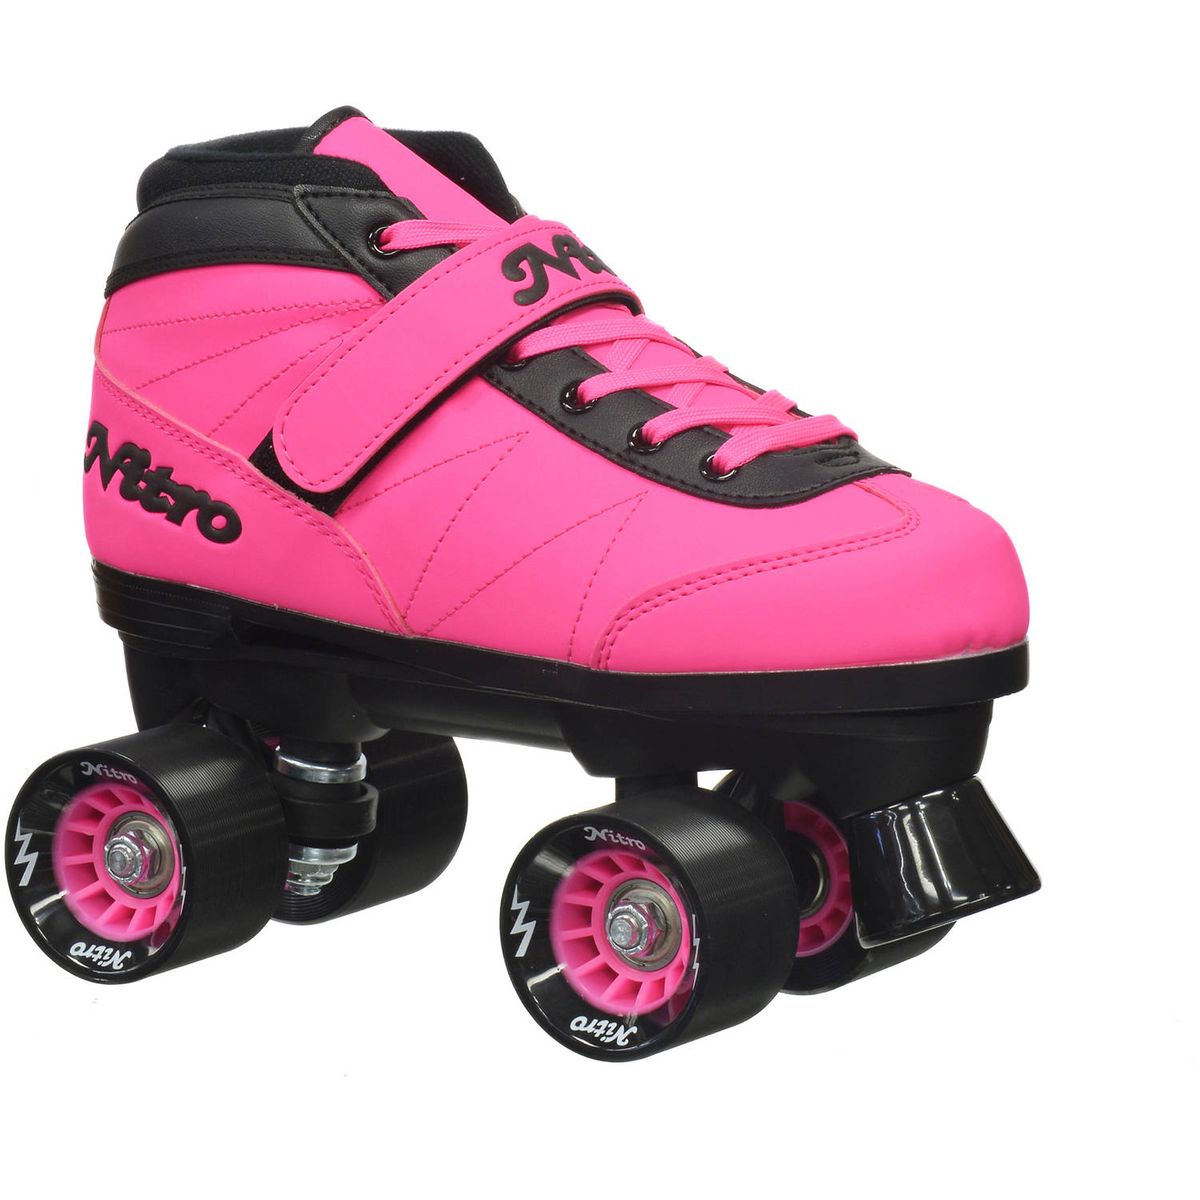 [RDY] [送料無料] エピック ニトロターボ ピンク クワッドスピードローラースケート [楽天海外通販] | Epic Nitro Turbo Pink Quad Speed Roller Skates